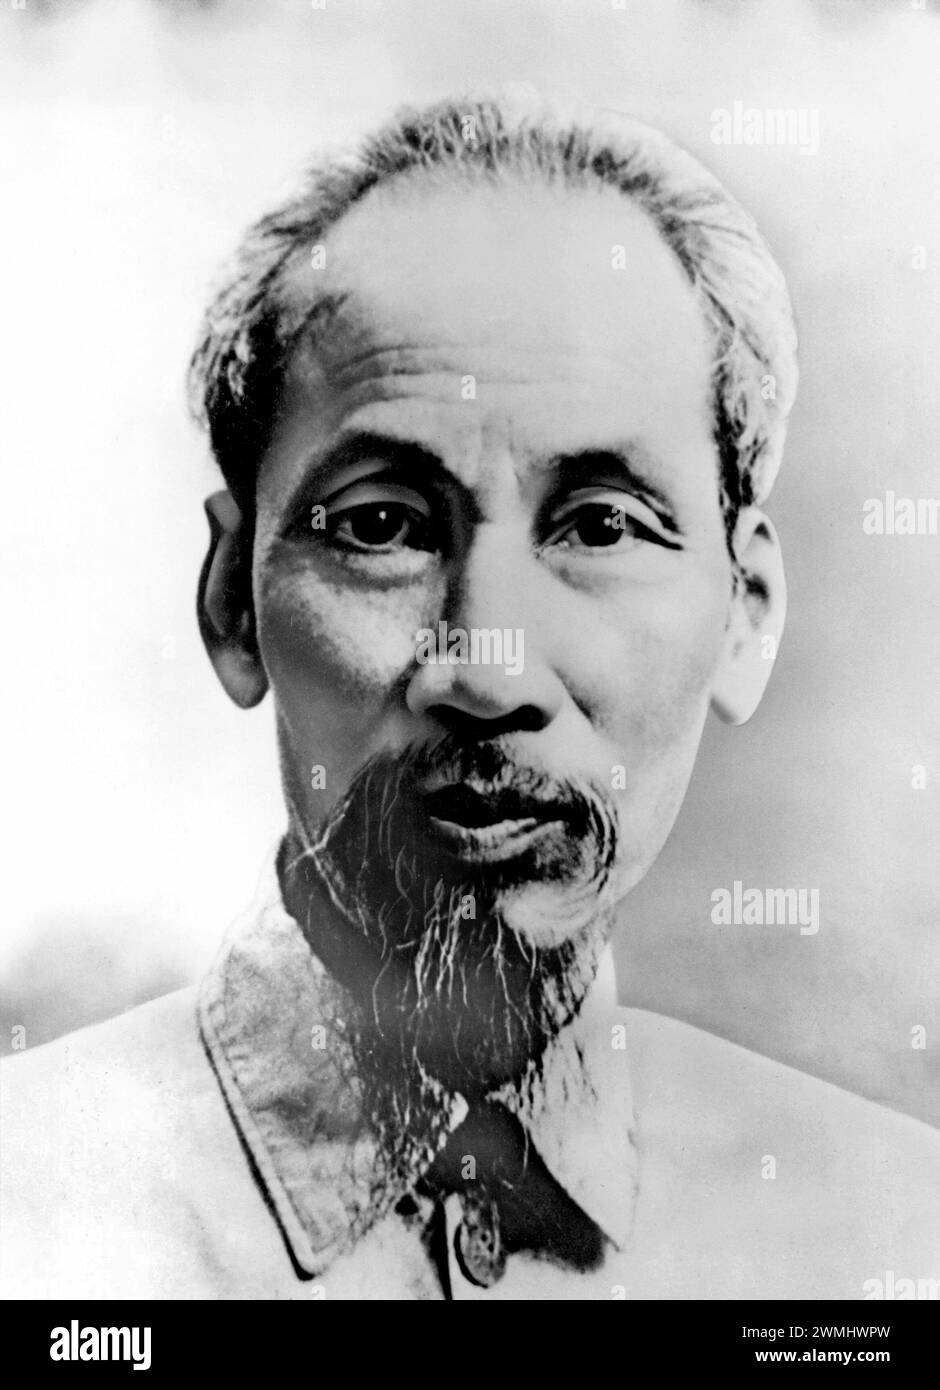 Ho Chi Minh. Porträt des vietnamesischen kommunistischen Revolutionärs, Hồ Chí Minh (né Nguyễn Sinh Cung 1890-1969), um 1946. Ho Chi Minh war von 1945 bis 1969 der 1. Präsident der Demokratischen Republik Vietnam. Stockfoto